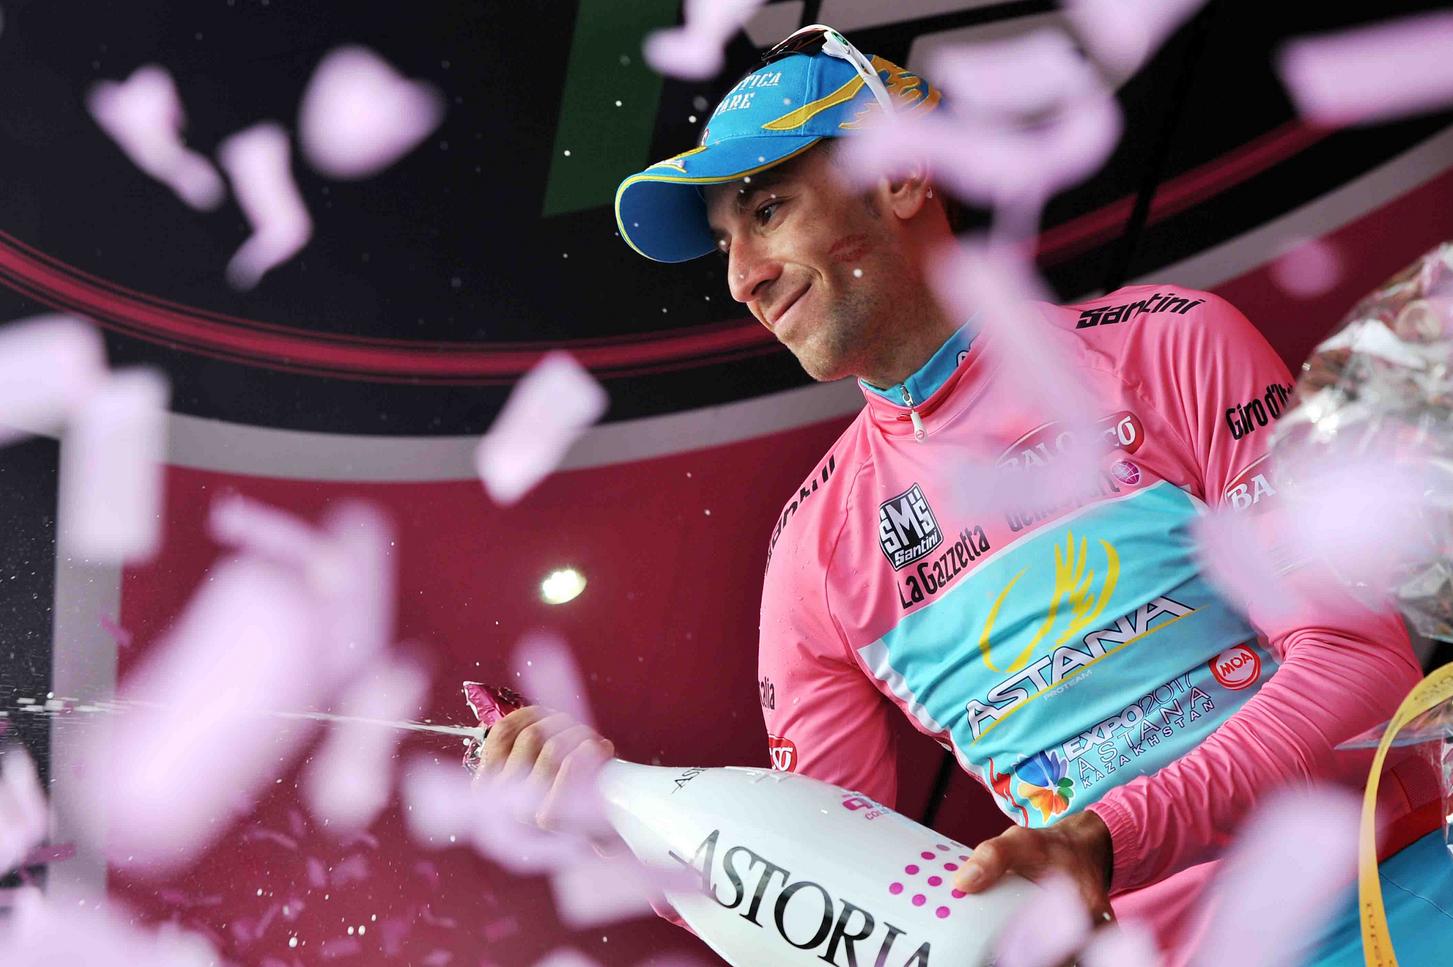 2013-Giro-dItalia-Stage-17-Vincenzo-Nibali.jpg